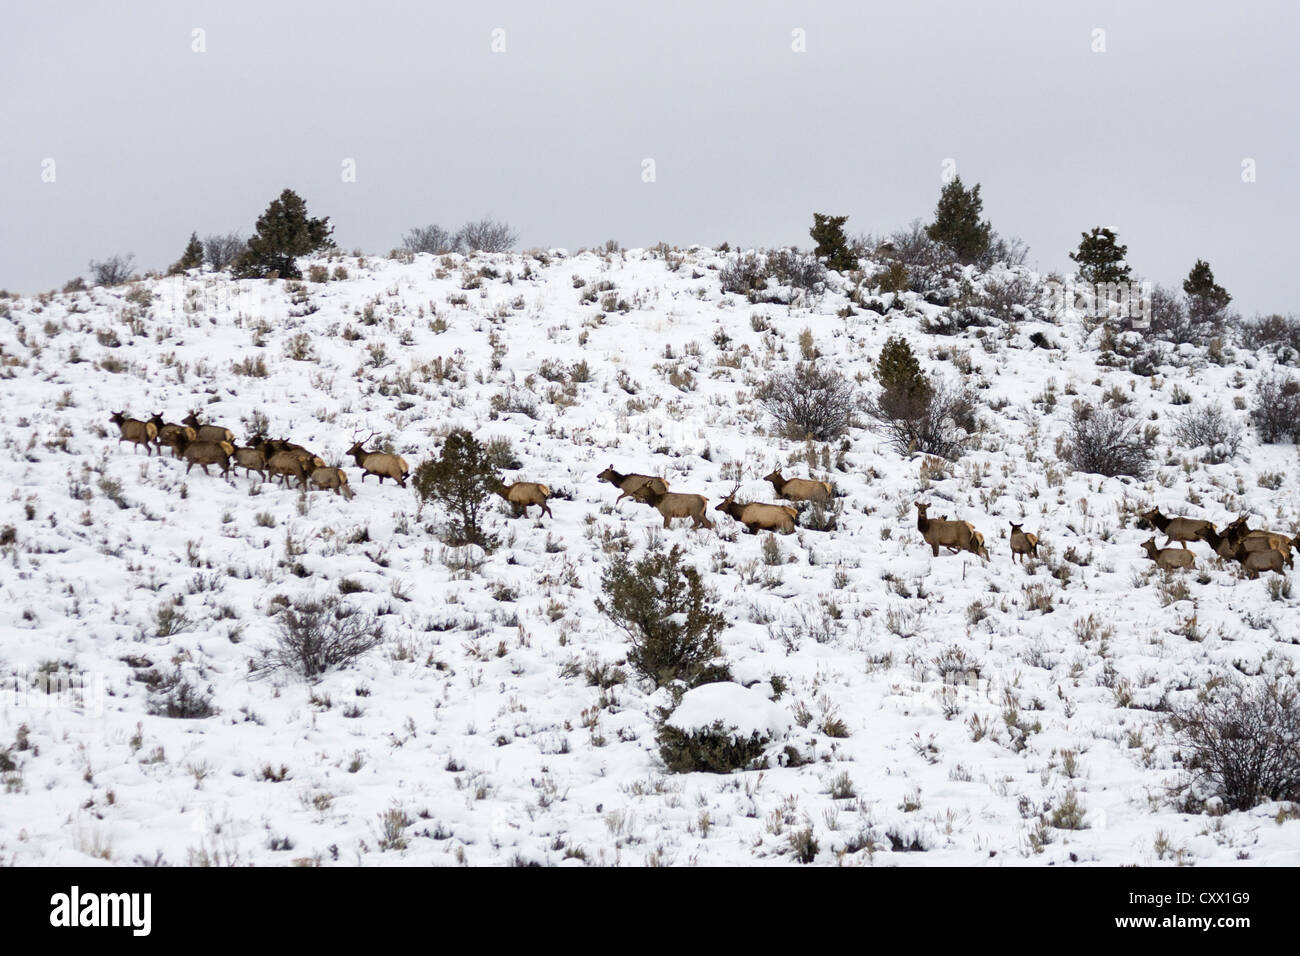 Elk (Cervus canadensis) on snowy hillside, Colorado, USA Stock Photo